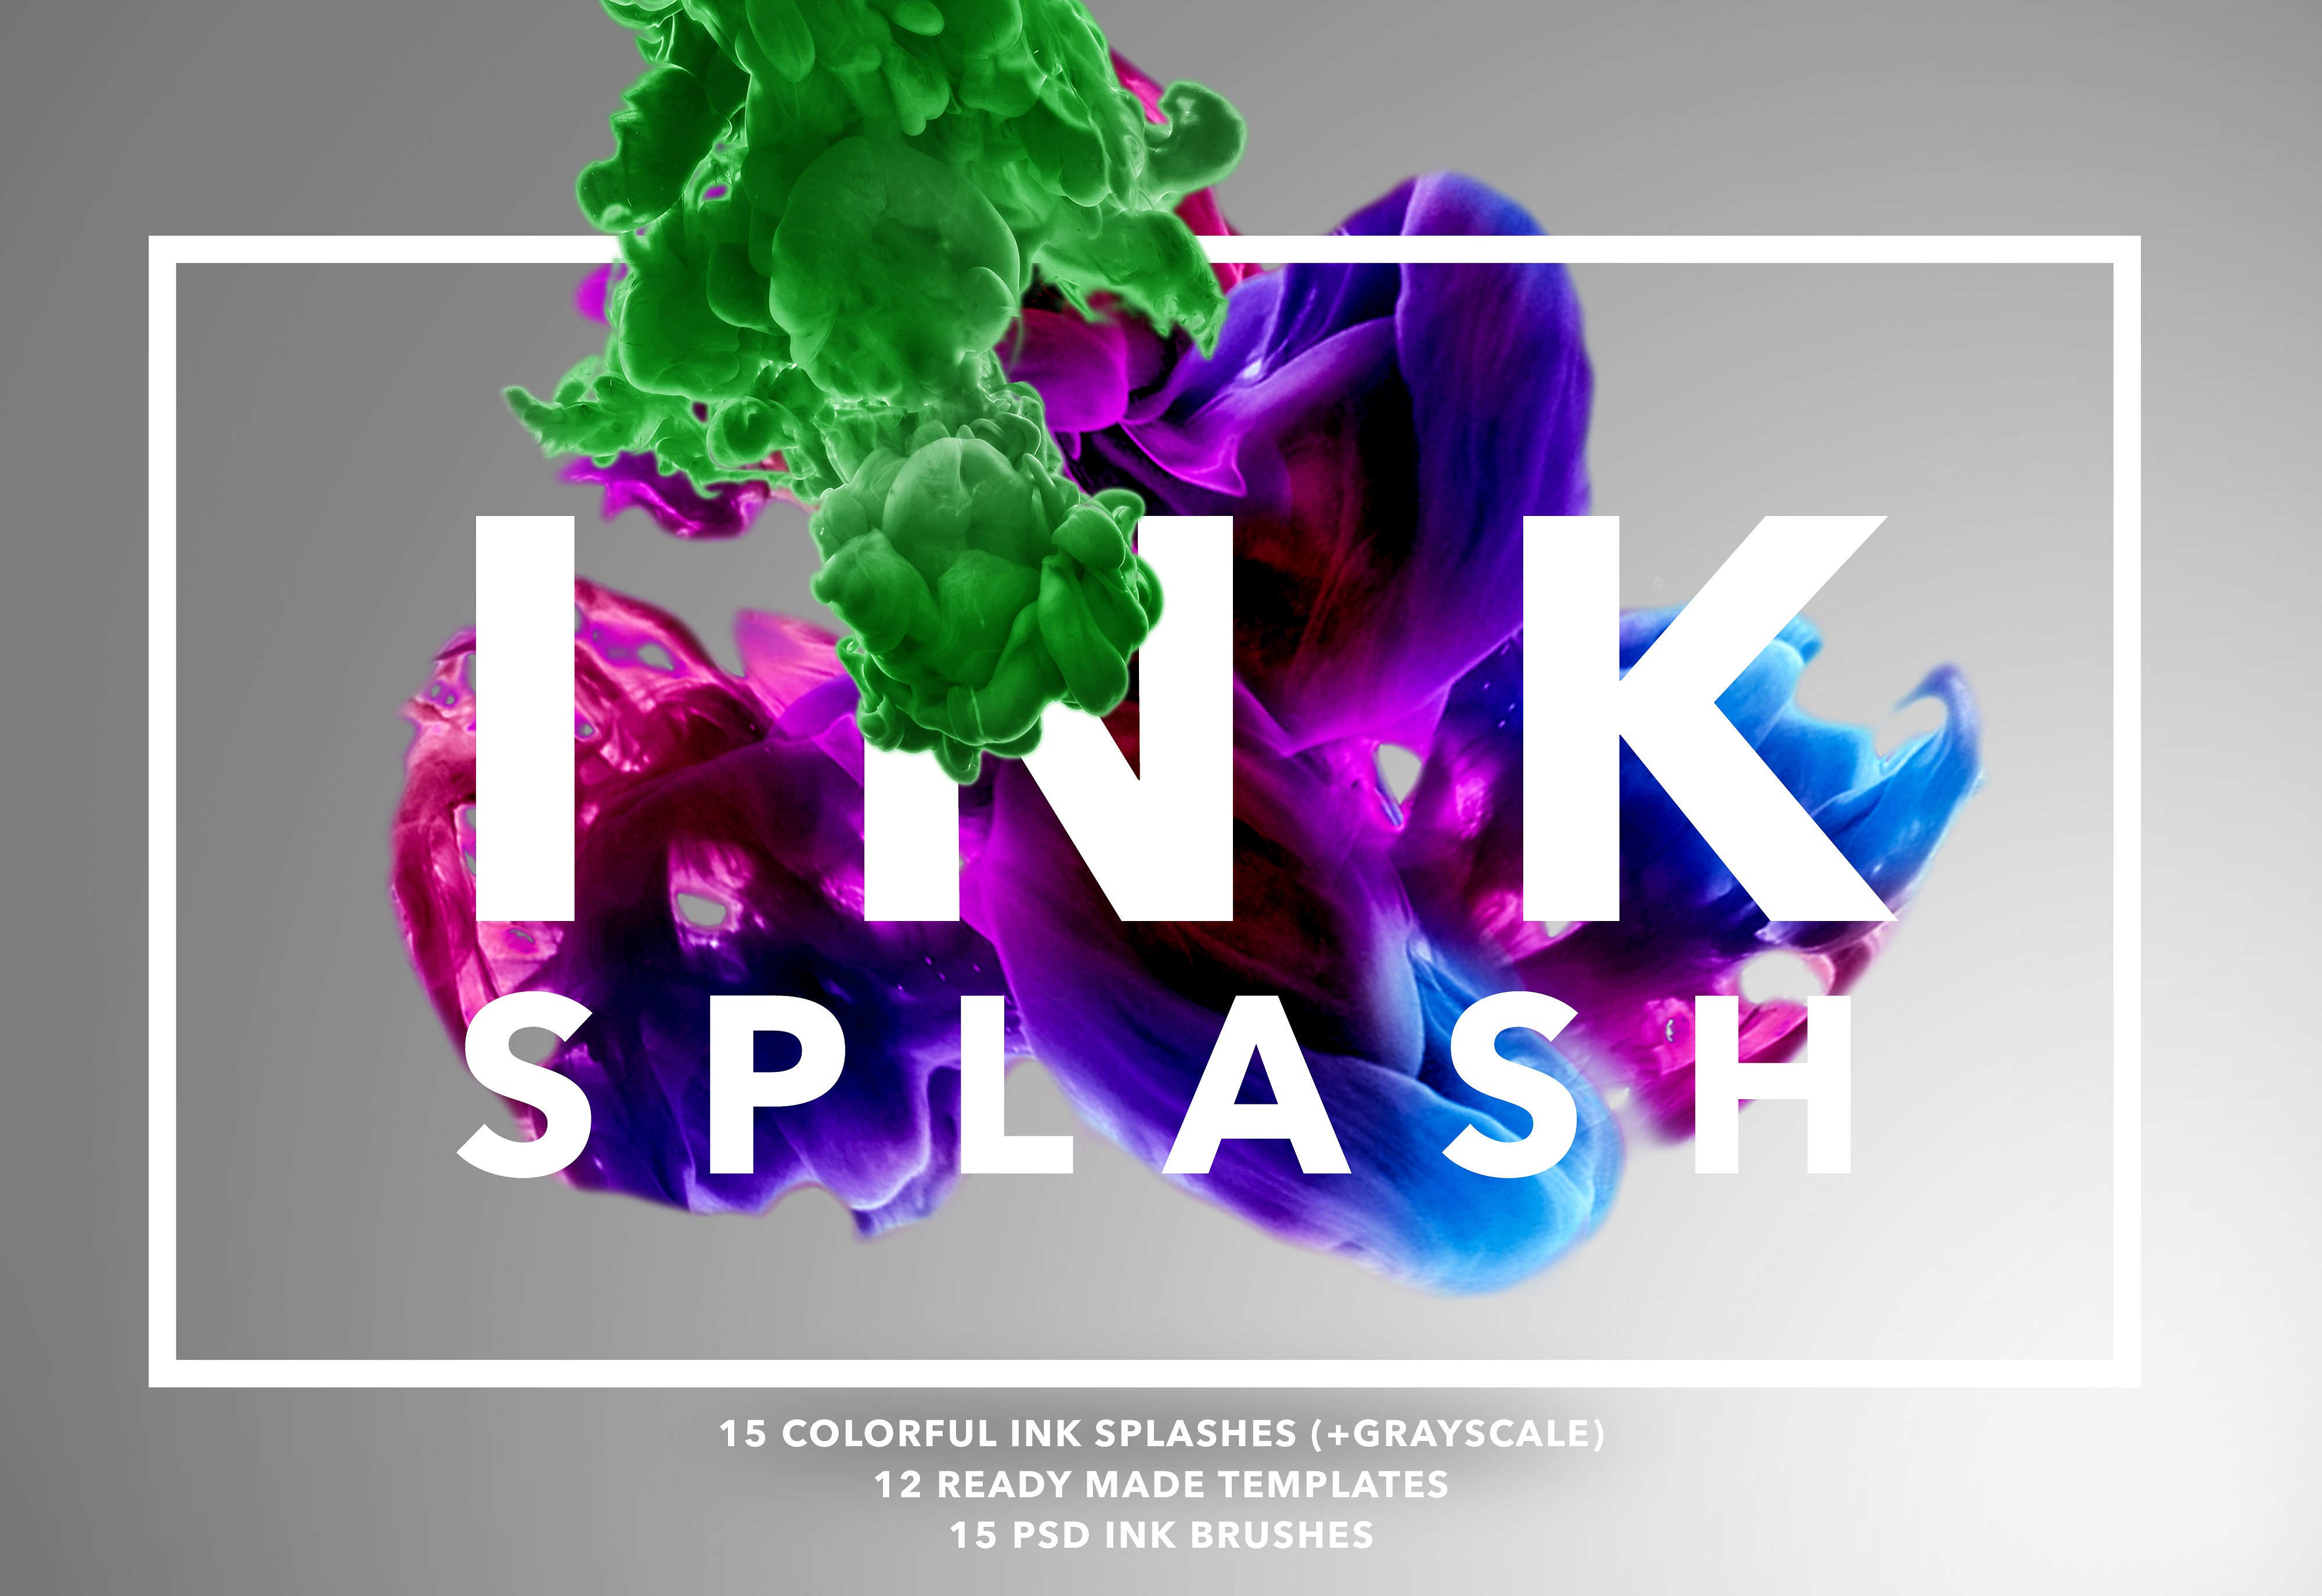 I N K Splash Bundle-漂亮的彩色墨水在水中的状态的PS笔刷下载[psd,png,jpg,abr]插图